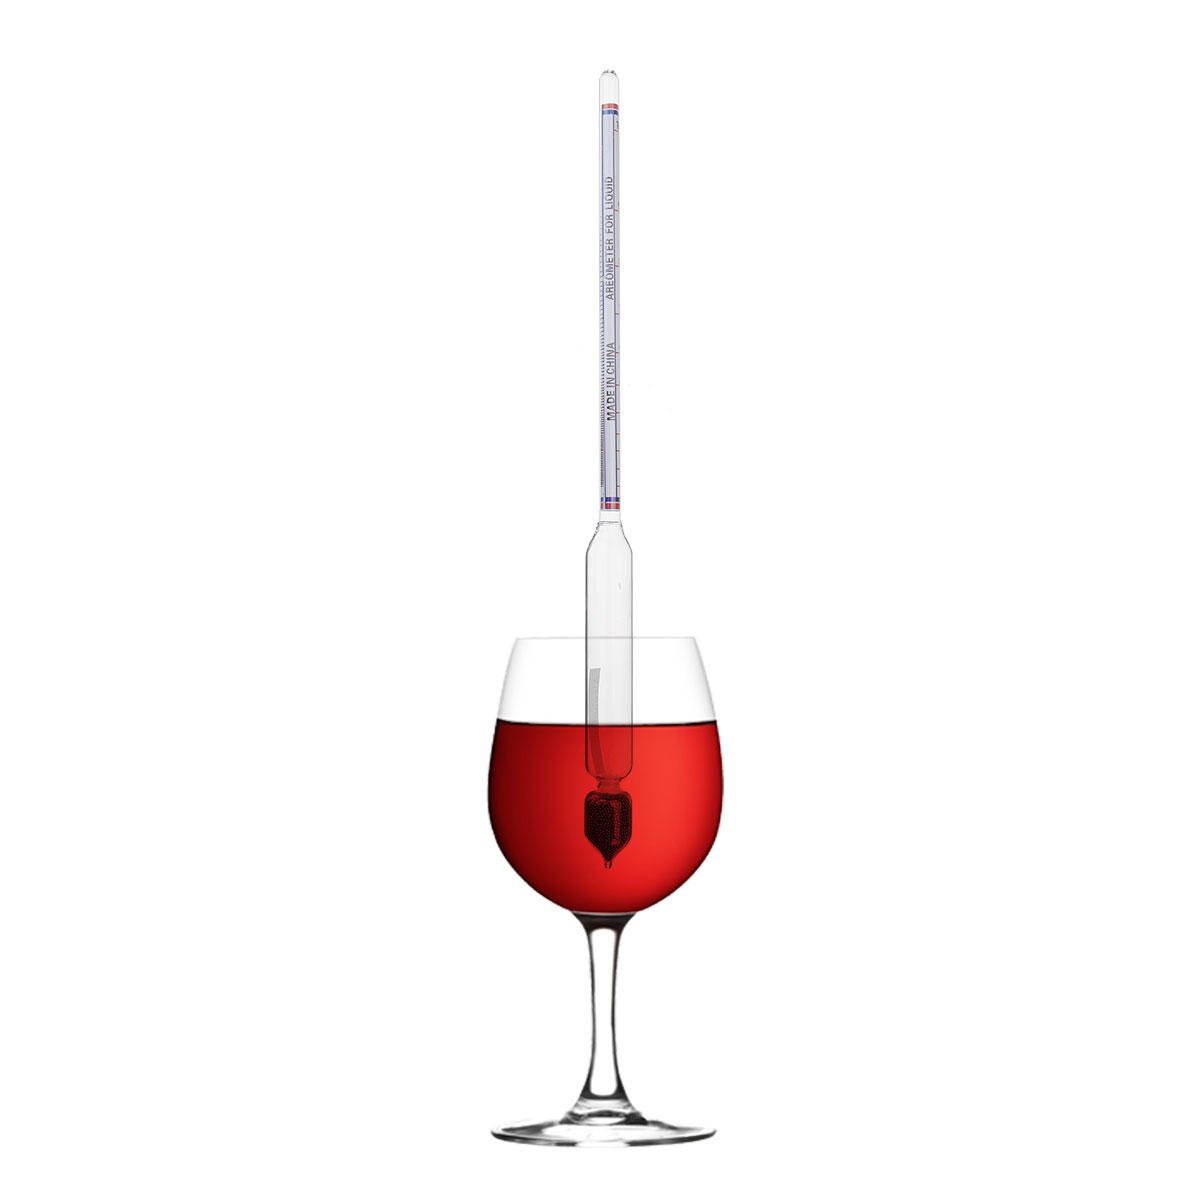 SGerste 0-100° Hydrometer Home Alcohol Meter for Whiskey Vodka Wine Spirits Density Tester